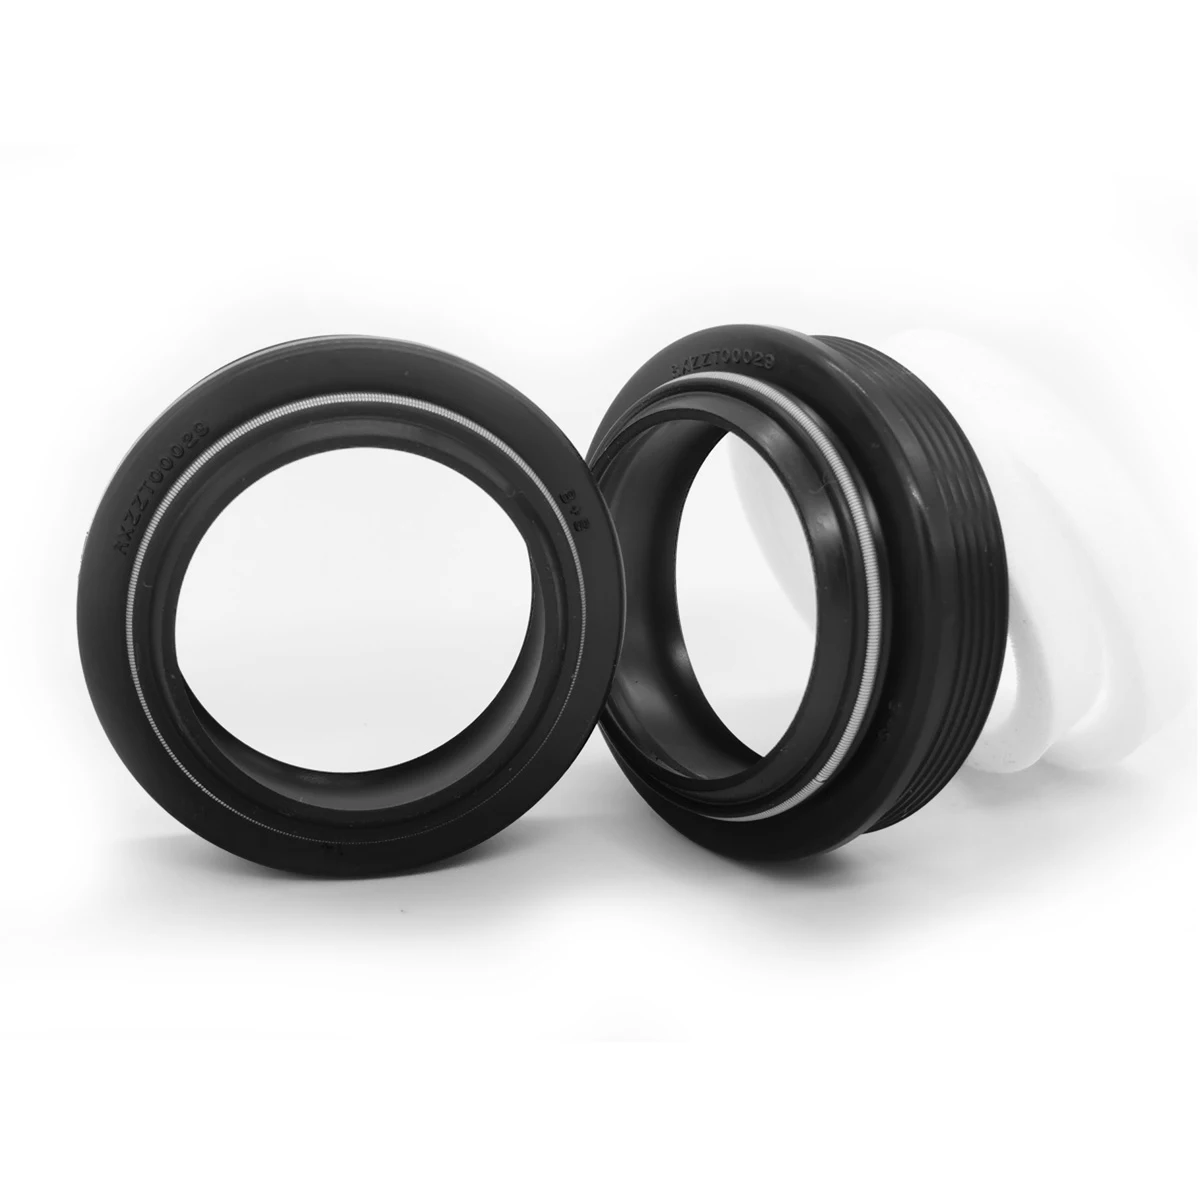 Gabel Staub Dichtung 30mm Dichtung & Schaum Ring für Rockshox/Manitou Gabel Reparatur Kits Teile Für XC30 ,30 siliver Tk,30G,R7.R7 Pro,M30